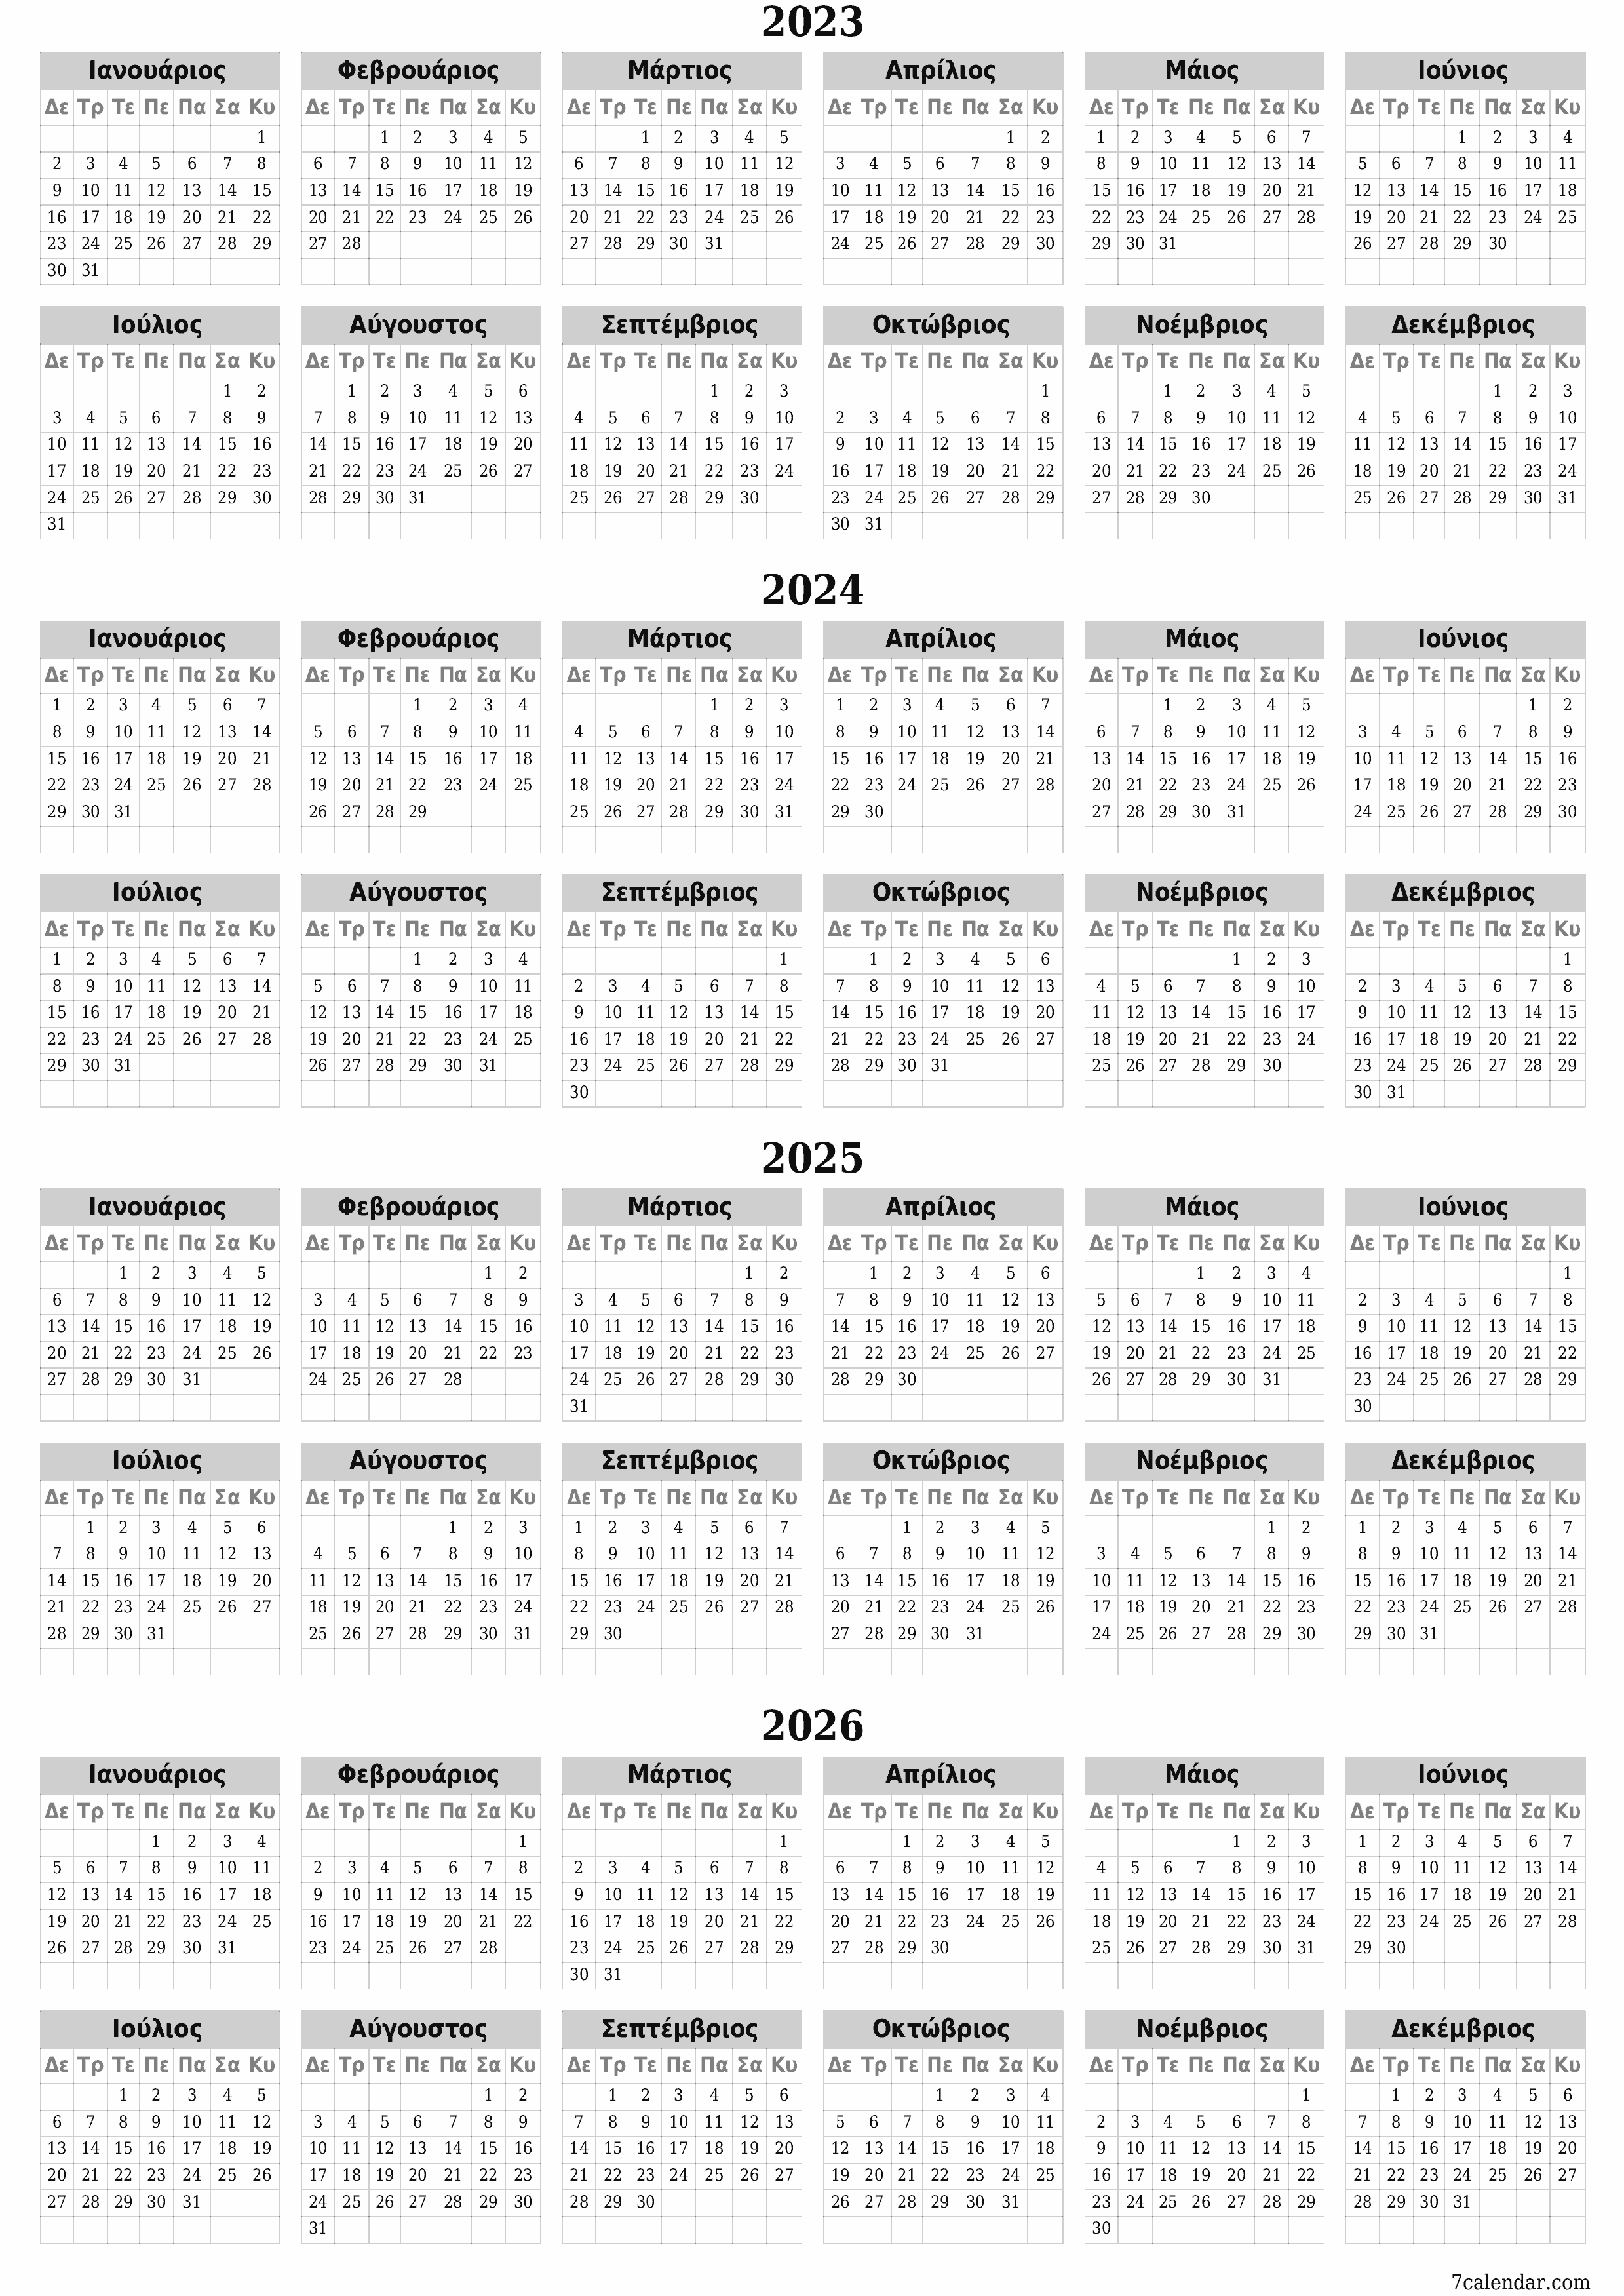 εκτυπώσιμο ημερολόγιο ημερολόγιο τοίχου πρότυπο ημερολογίου δωρεάν ημερολόγιοκατακόρυφος Ετήσιο Ημερολόγιο Σεπτέμβριος (Σεπ) 2023